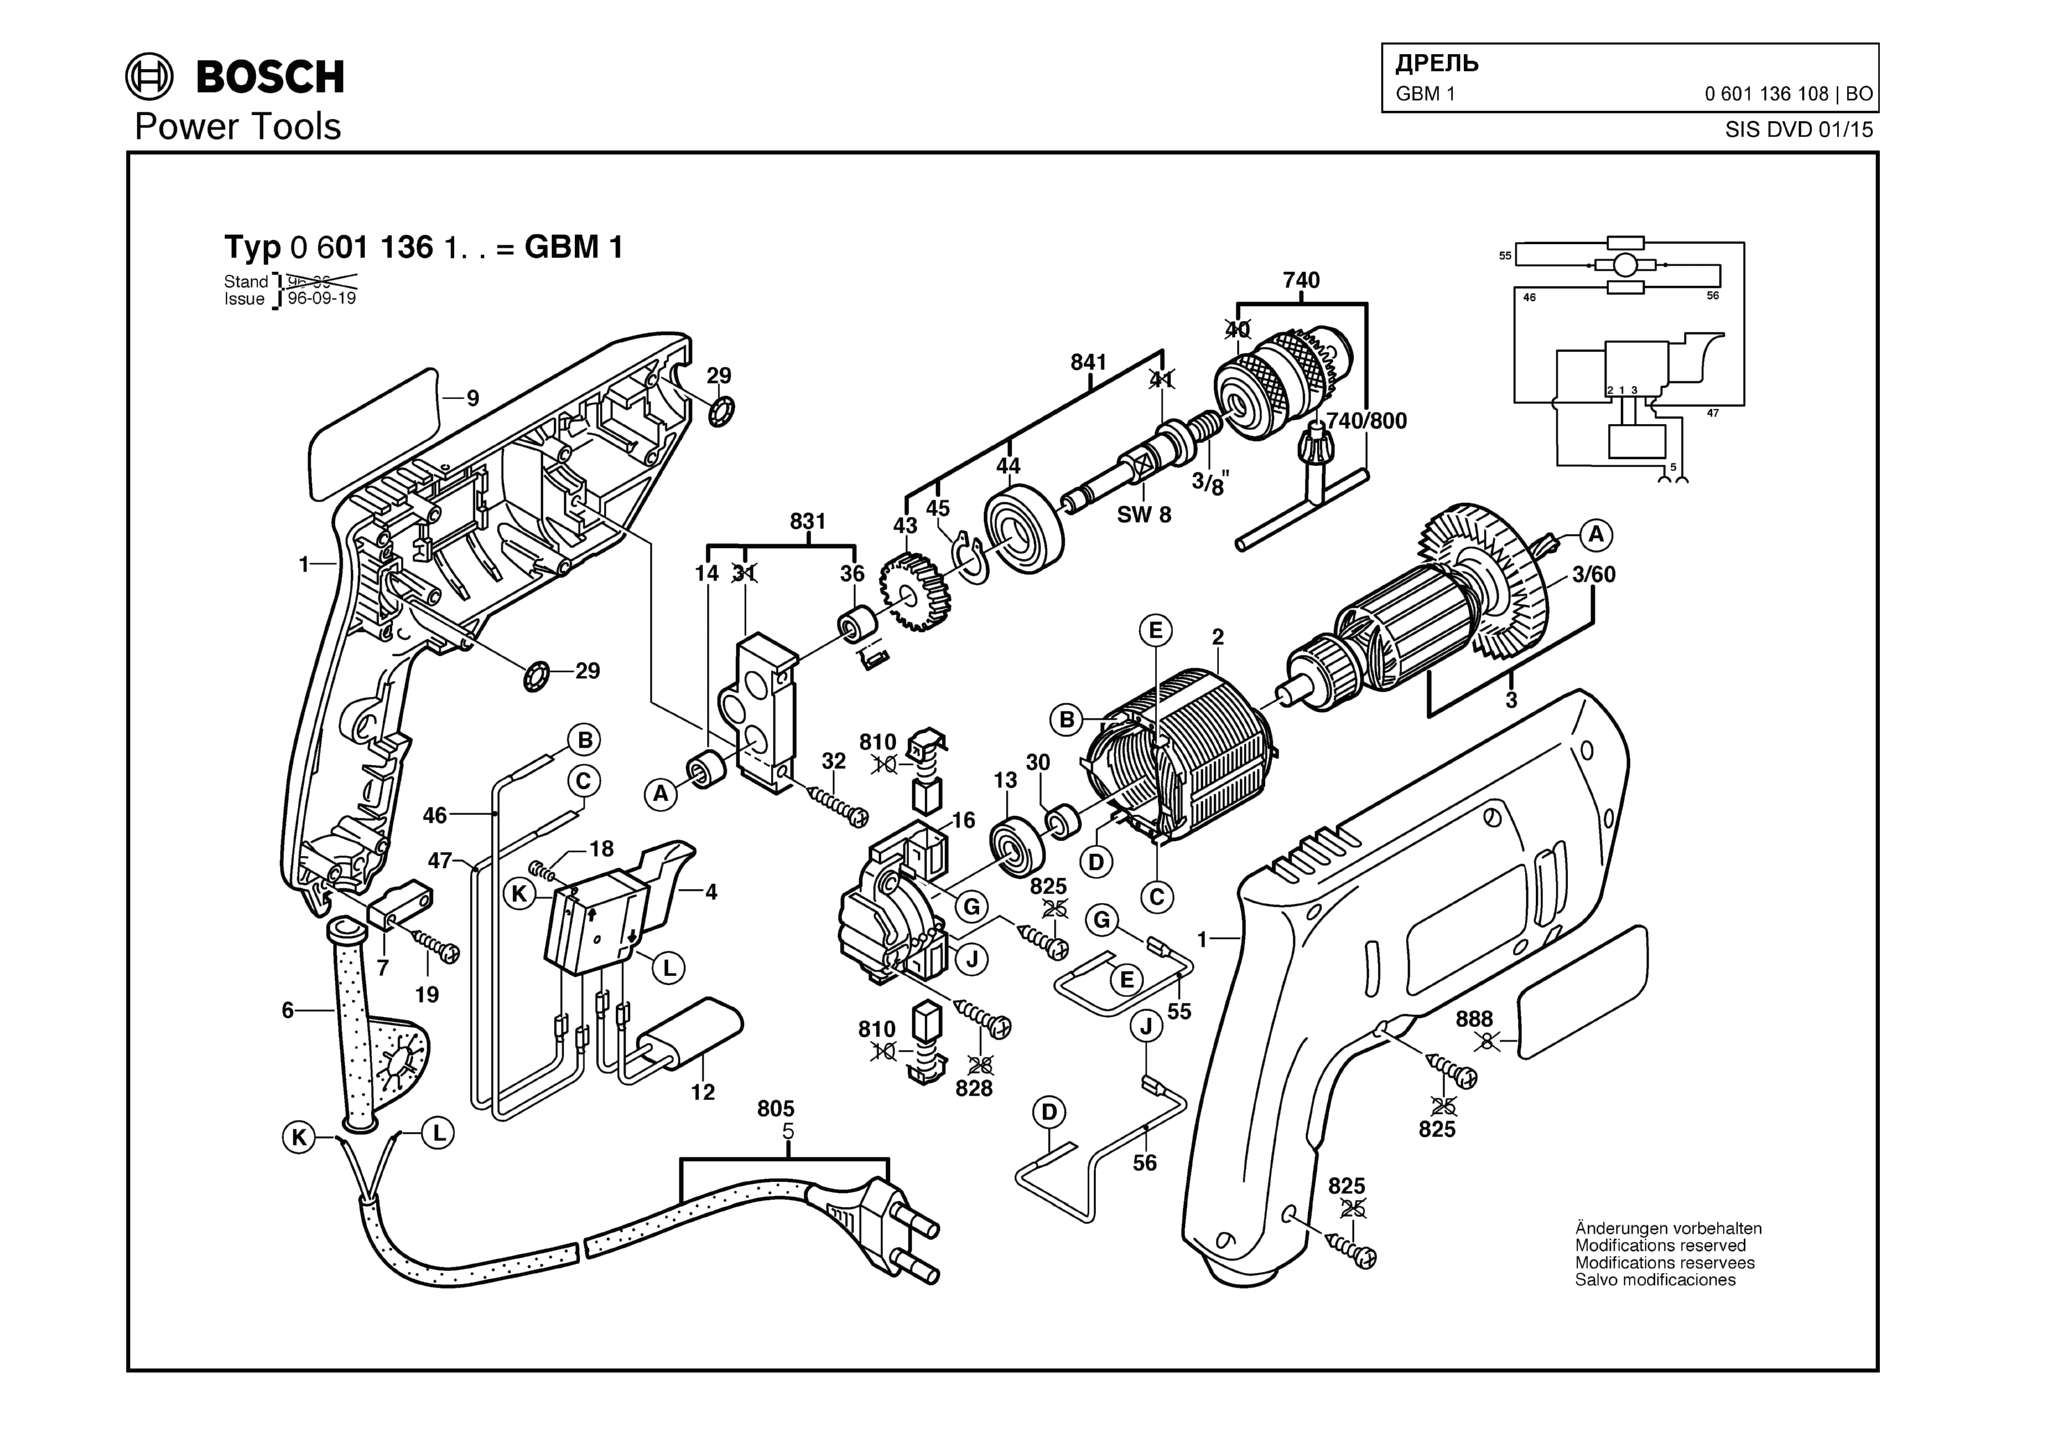 Запчасти, схема и деталировка Bosch GBM 1 (ТИП 0601136108)